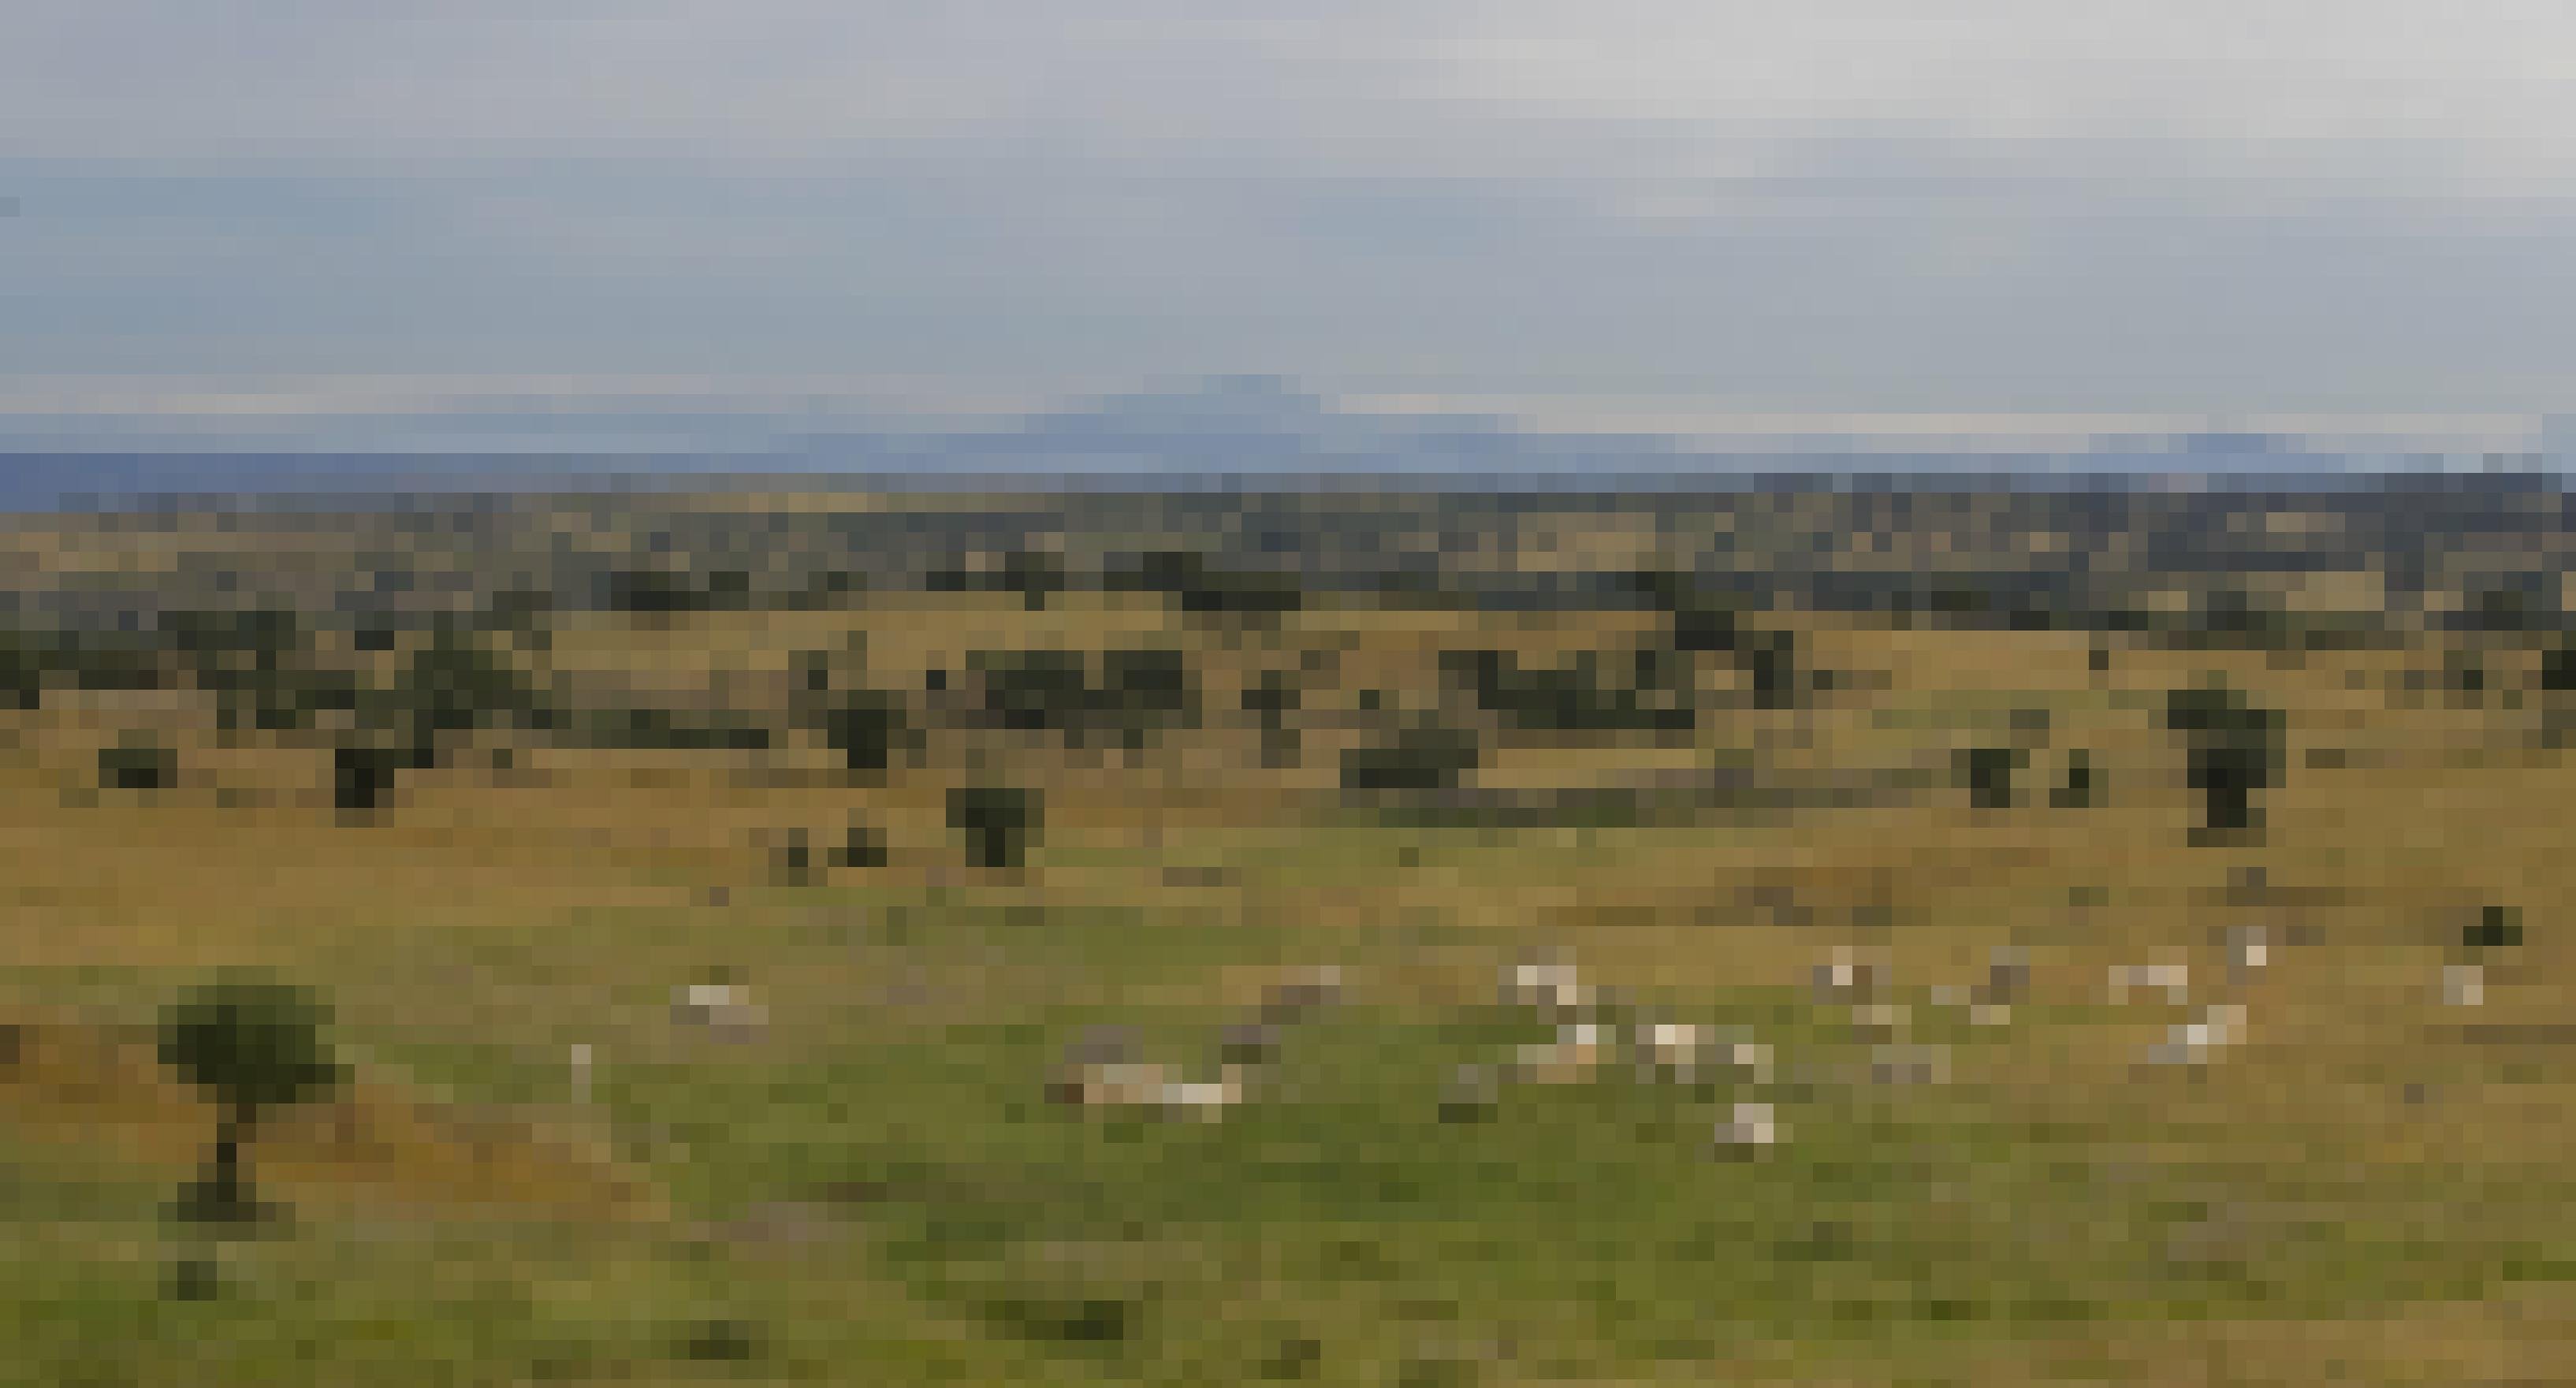 Landschaftsbild aus der Extremadura: Kühe weiden auf einer weiten Wiese, im Hintergrund ein Gebirgszug